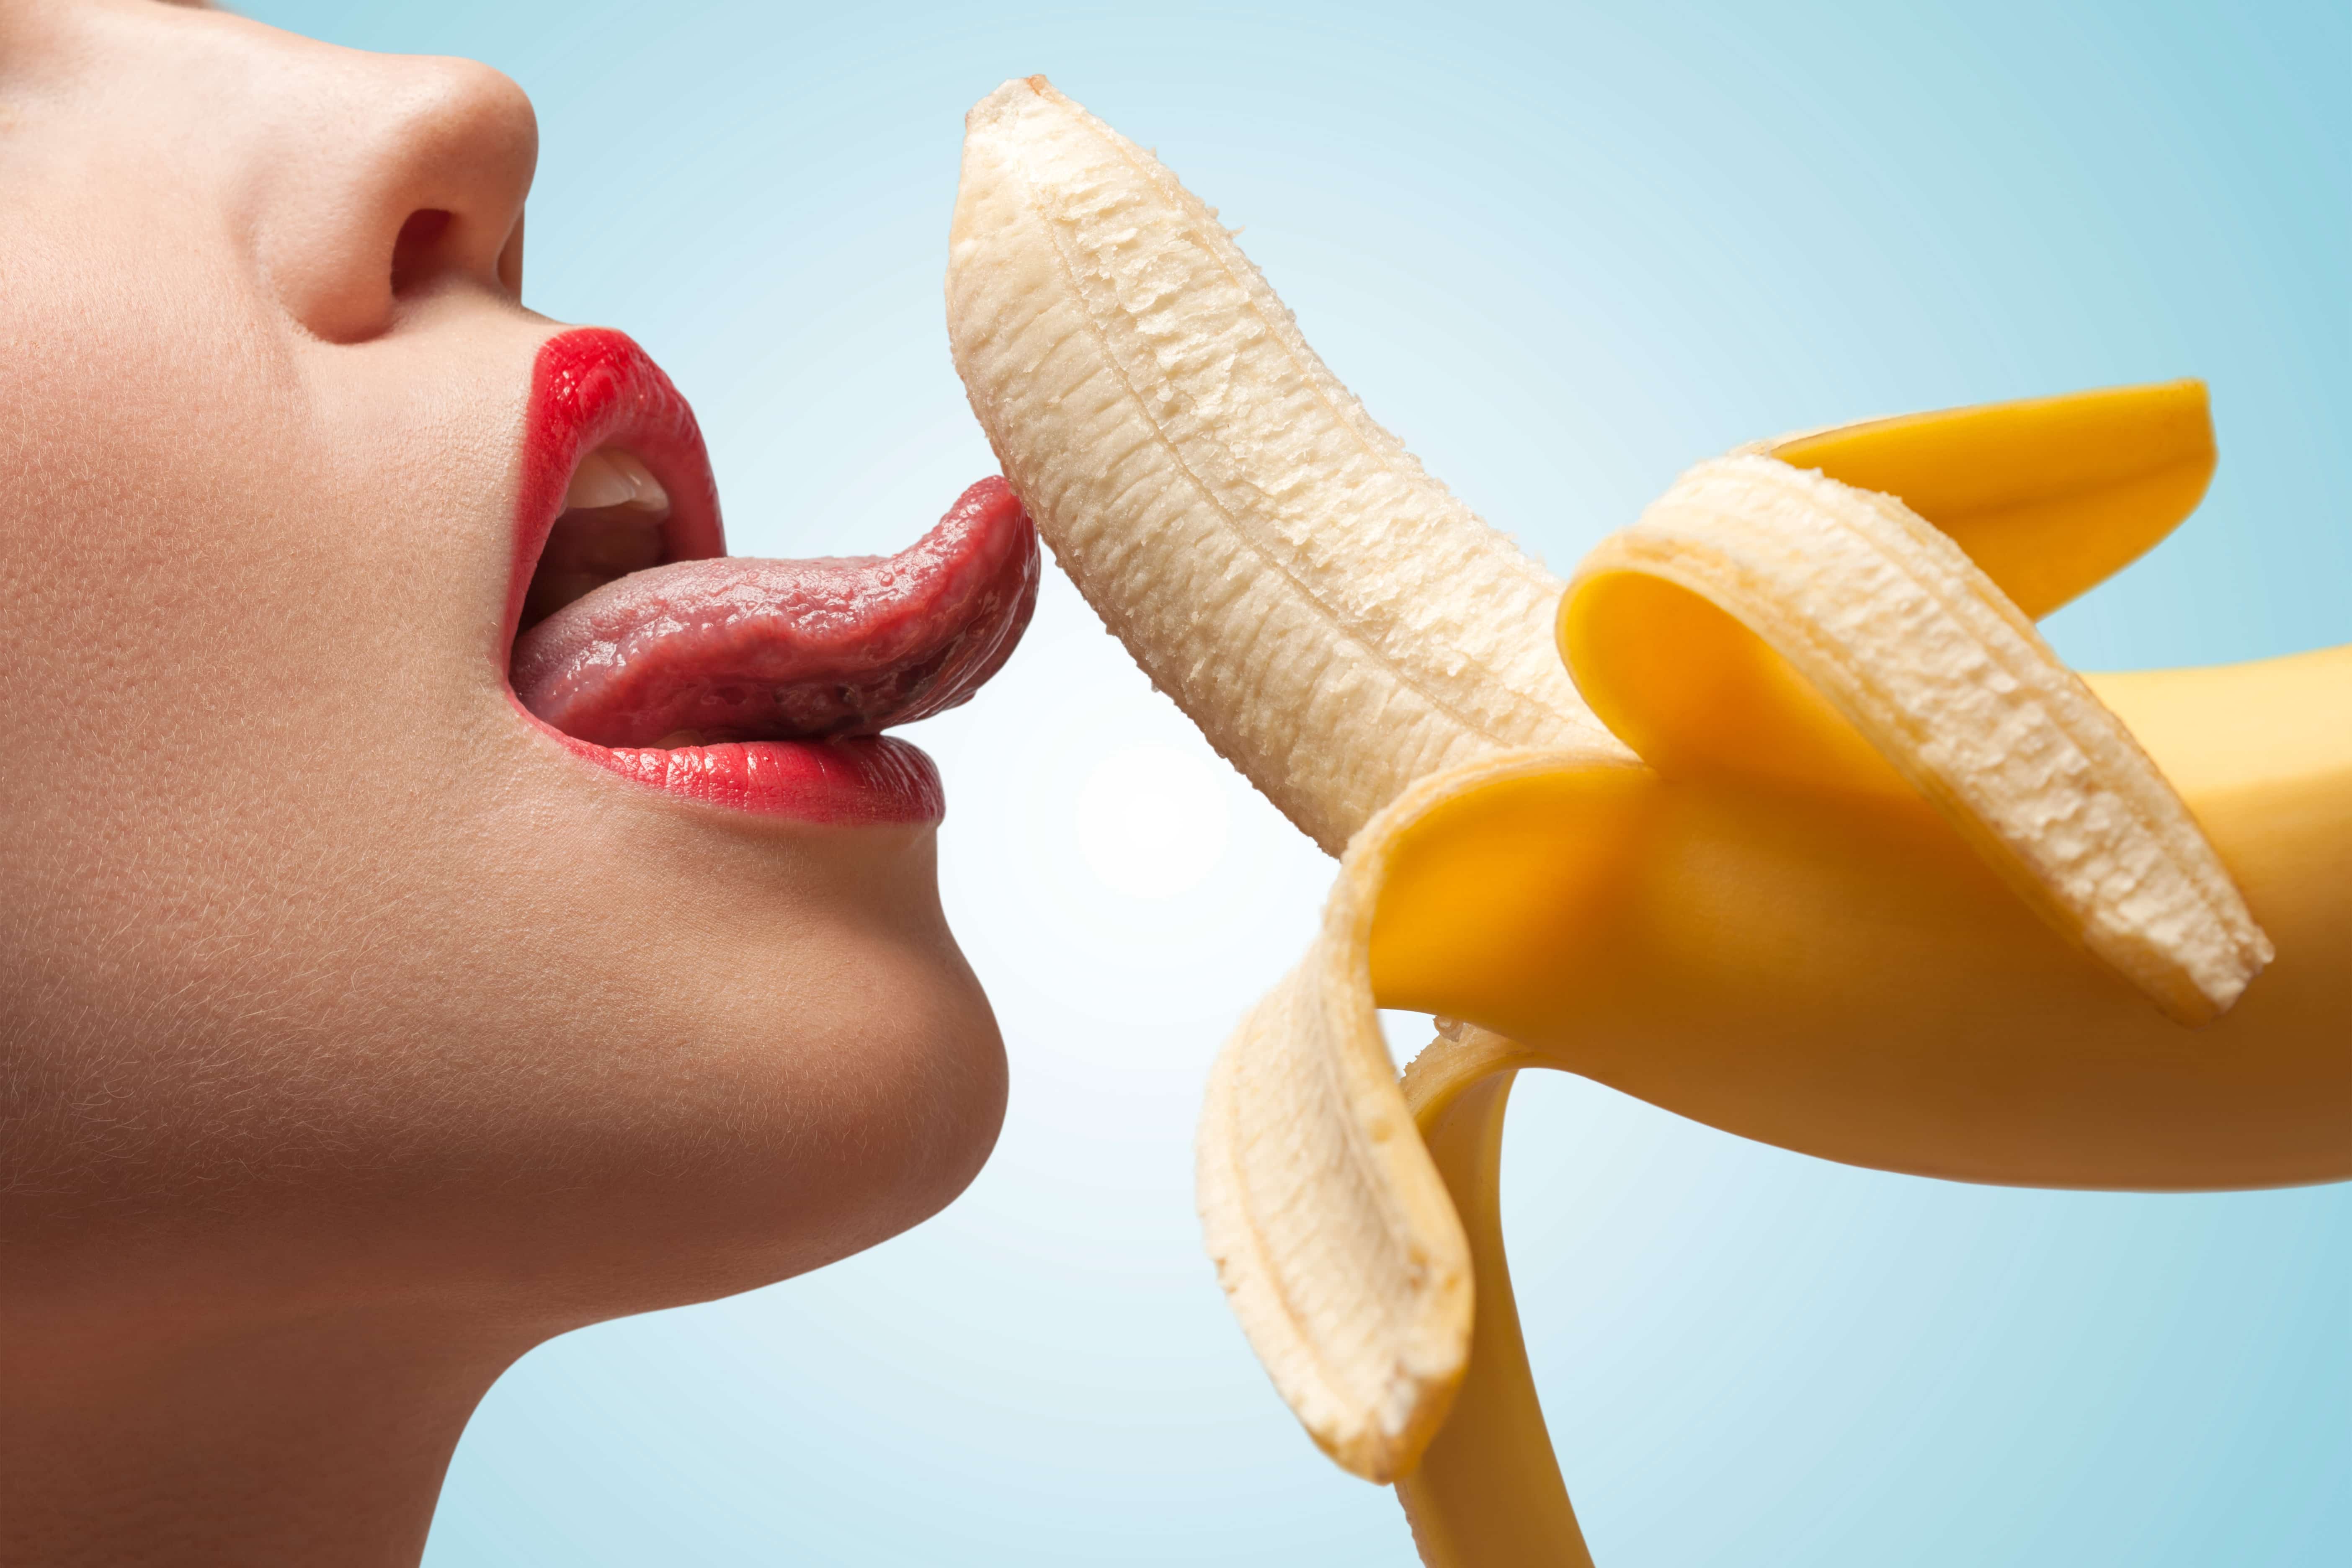 Femme qui lèche une banane avec sa langue | Felina Genève